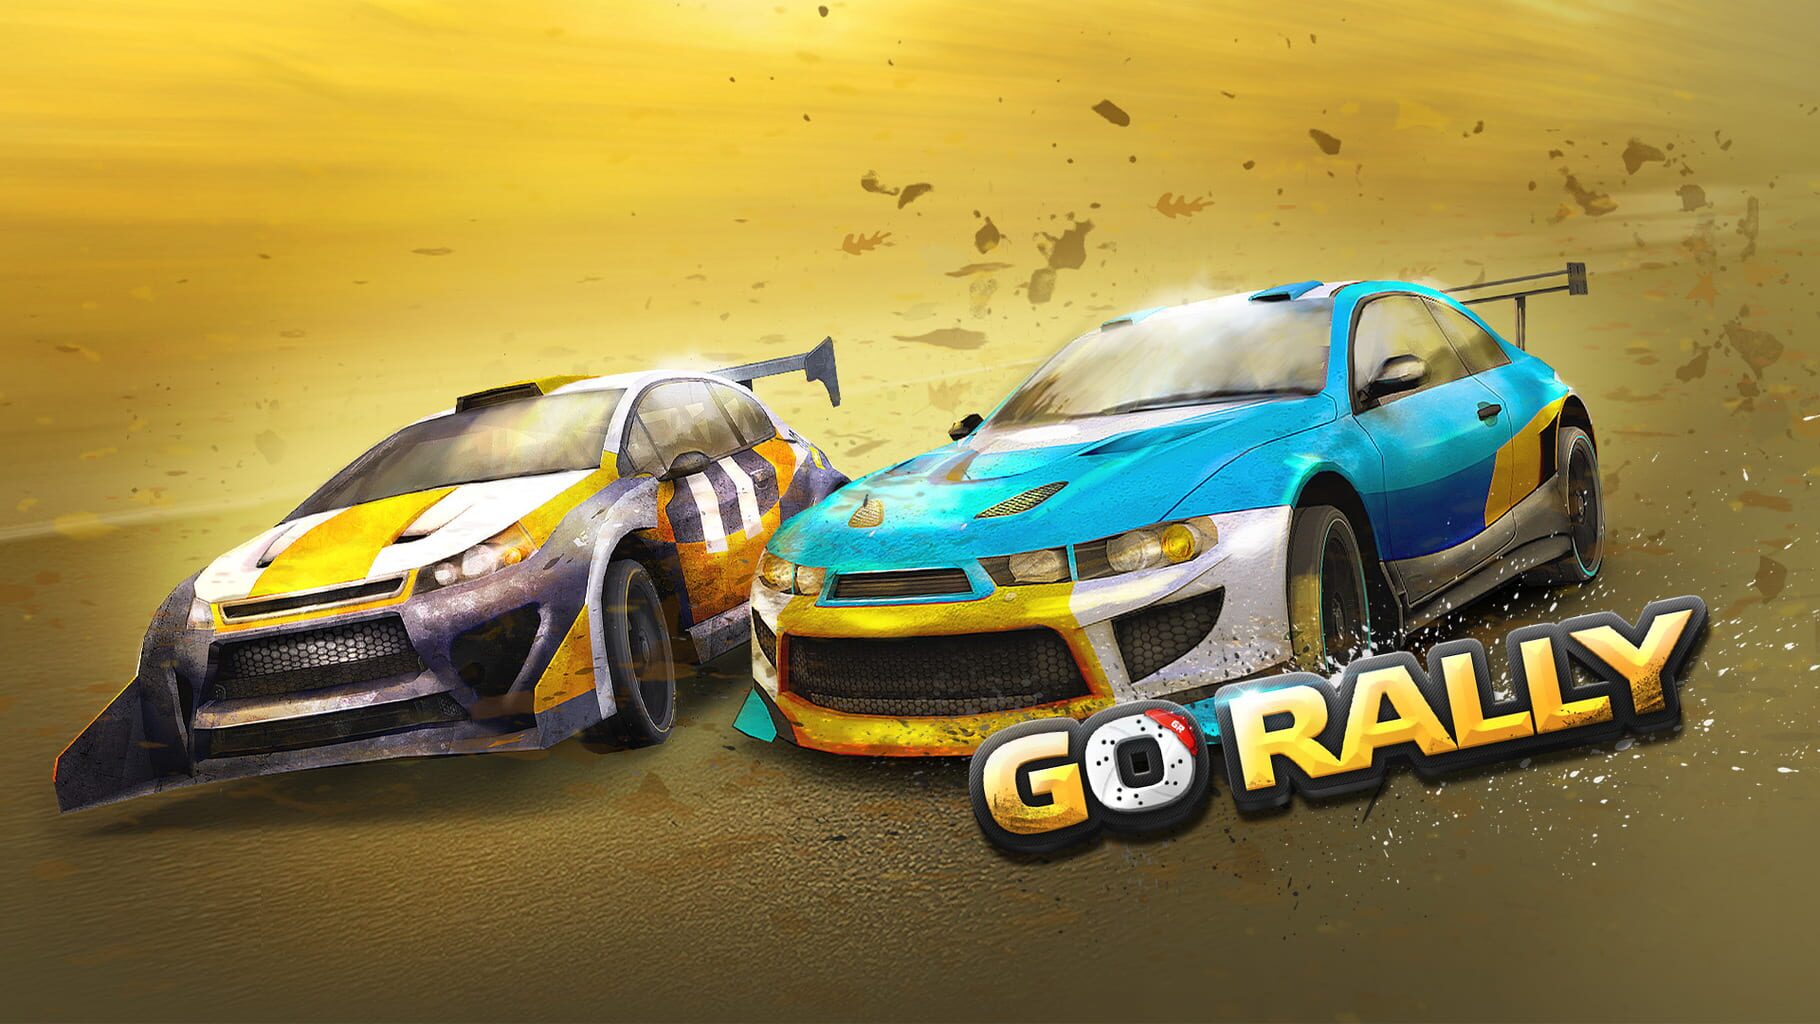 Go Rally artwork